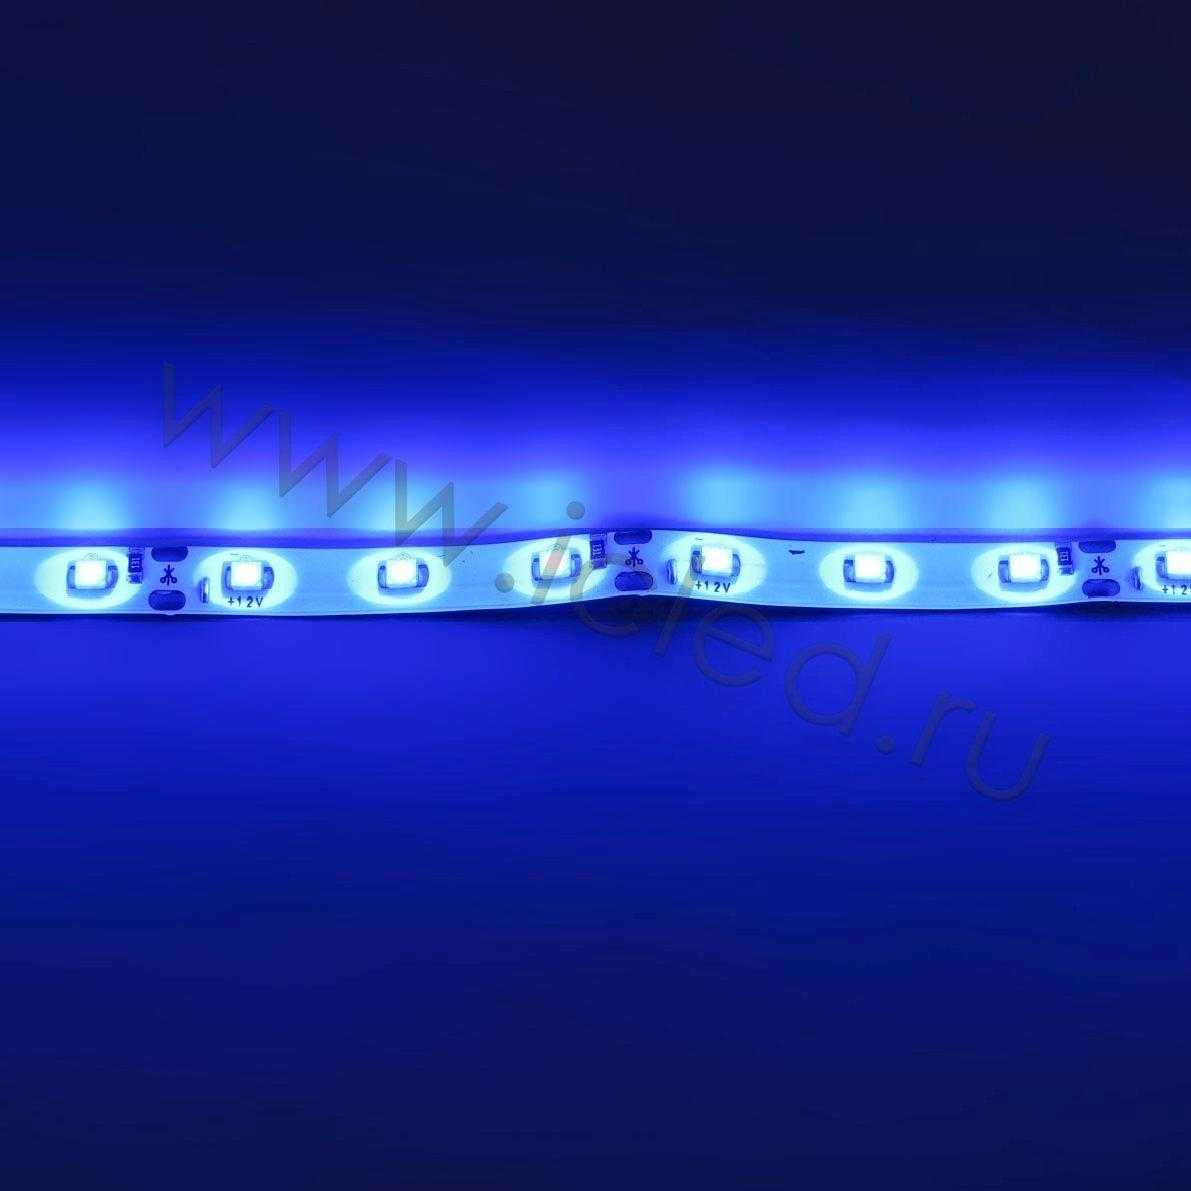 Влагозащищенные светодиодные ленты Светодиодная лента Standart class, 3528, 60led/m, Blue, 12V, IP65 Icled